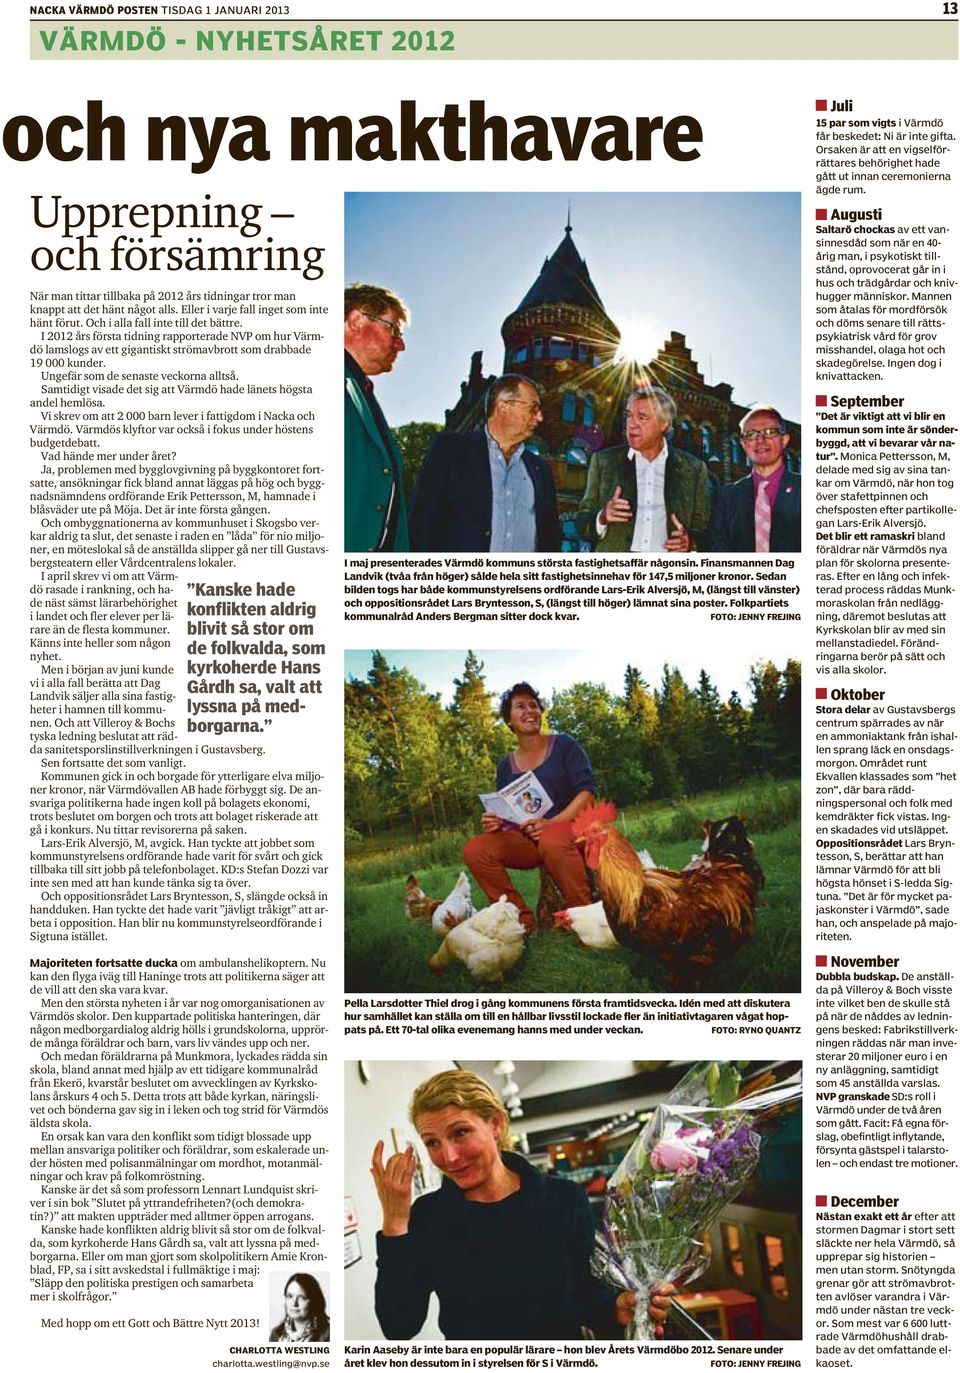 Och i alla fall inte till det bättre. I 2012 års första tidning rapporterade NVP om hur Värmdö lamslogs av ett gigantiskt strömavbrott som drabbade 19 000 kunder.